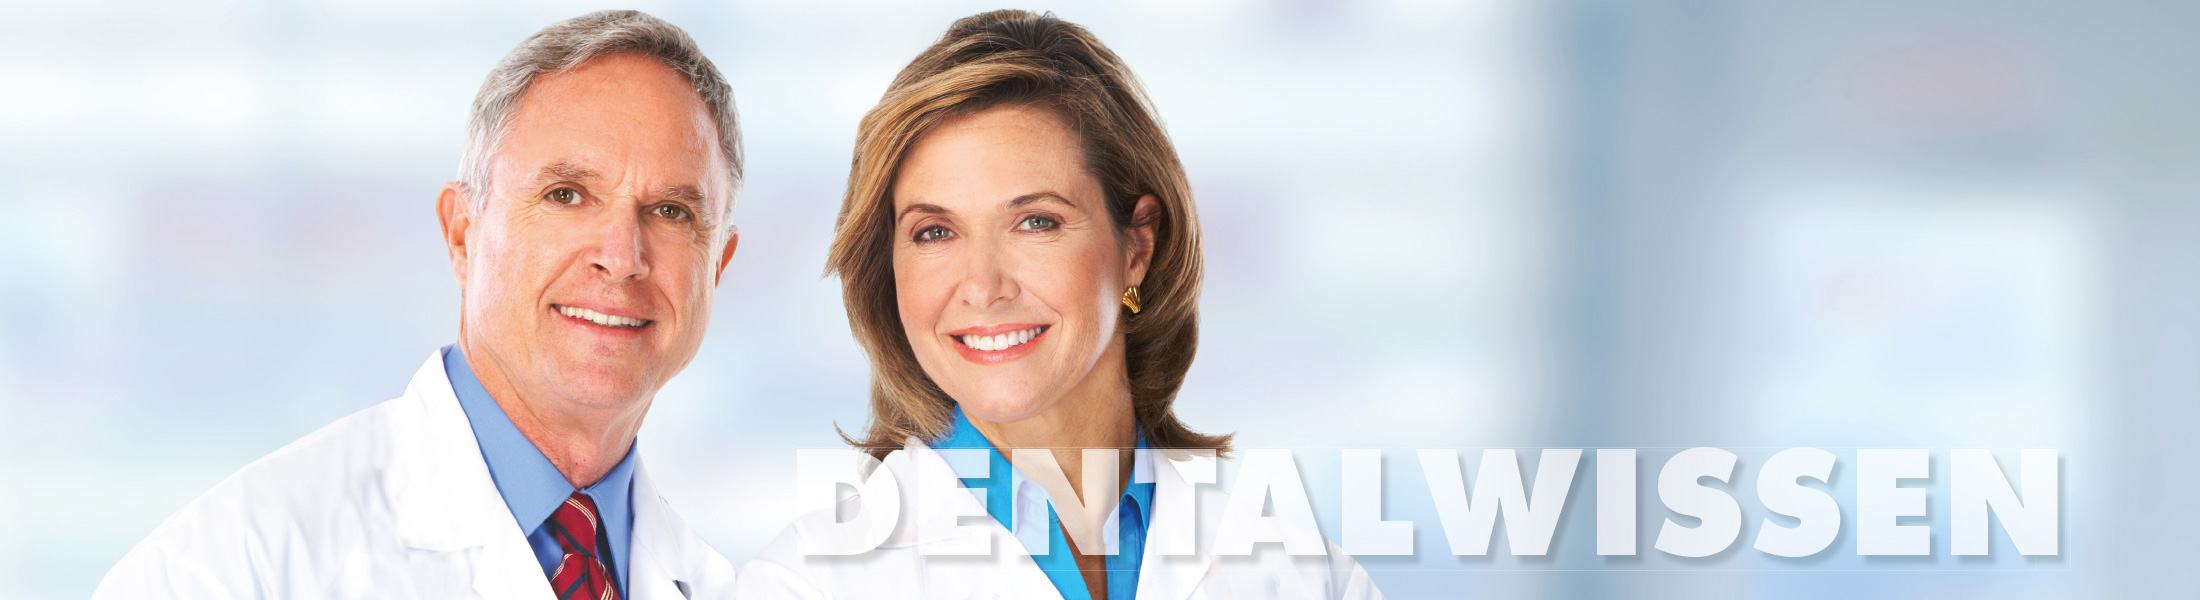 Dentalwissen-Behandlung-Ozontherapie 